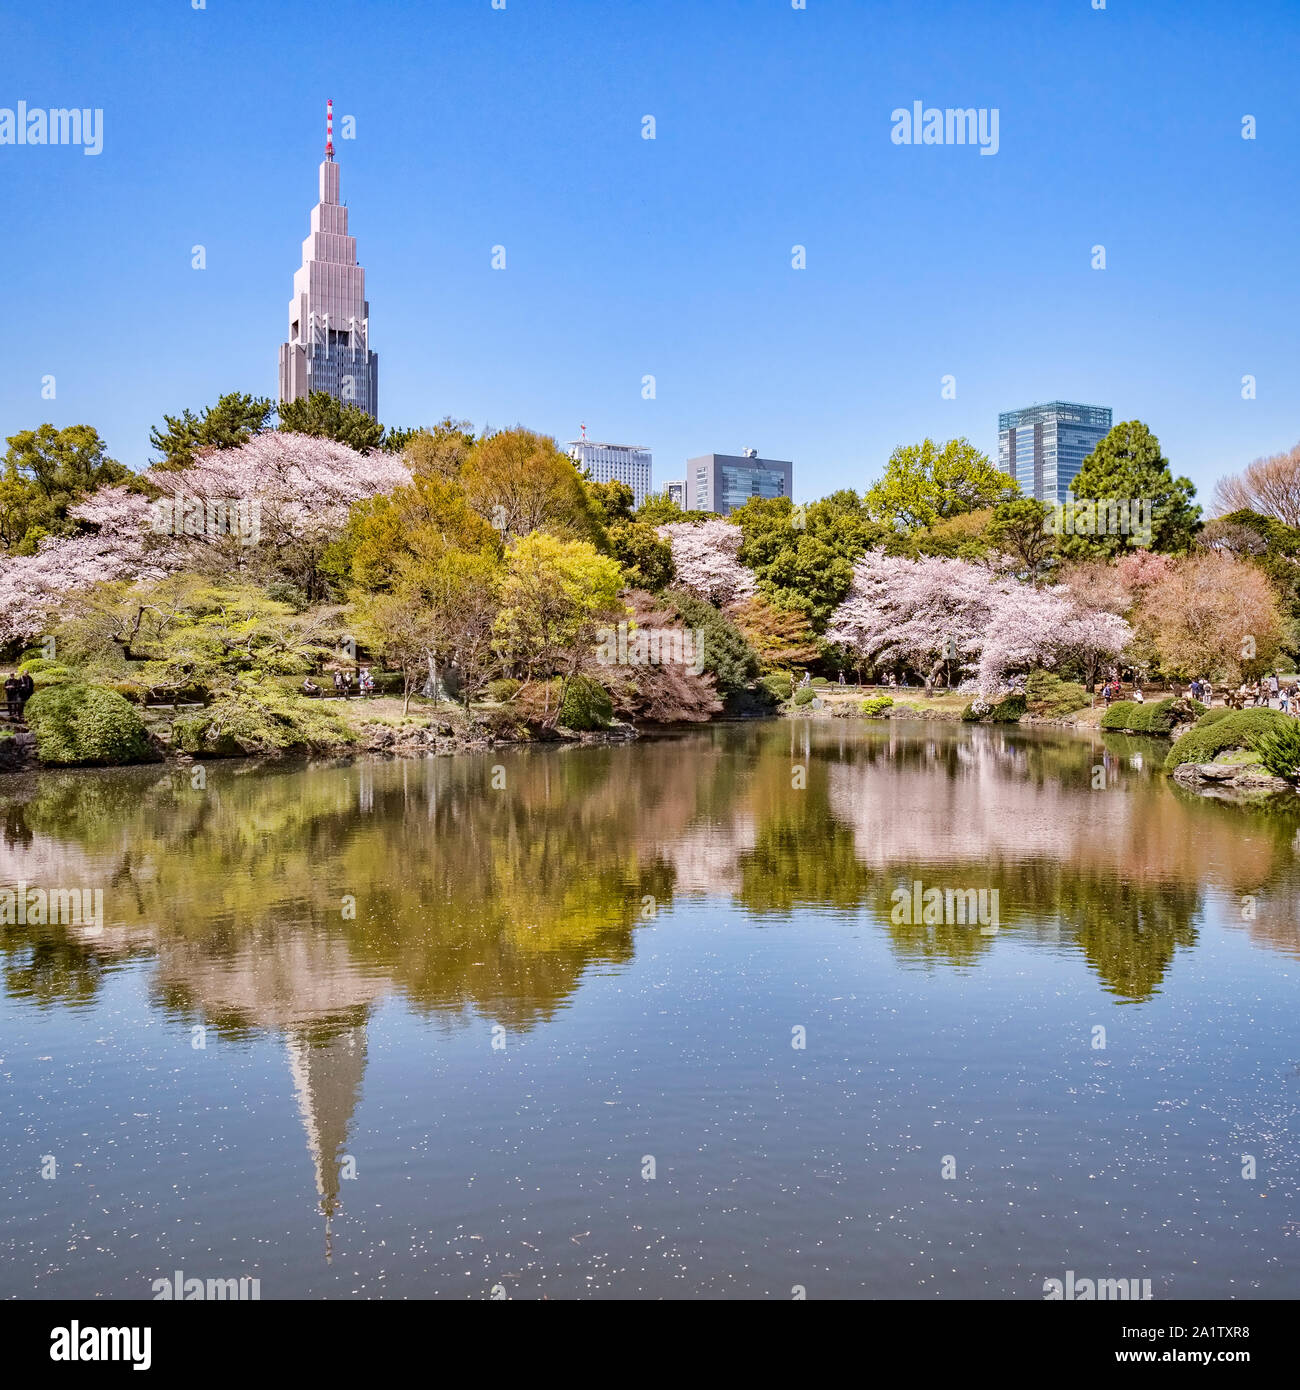 4 avril 2019 : Tokyo, Japon - Fleur de cerisier et le Shinjuku bâtiments reflète dans le lac du Jardin National de Shinjuku Gyoen, Tokyo. Banque D'Images